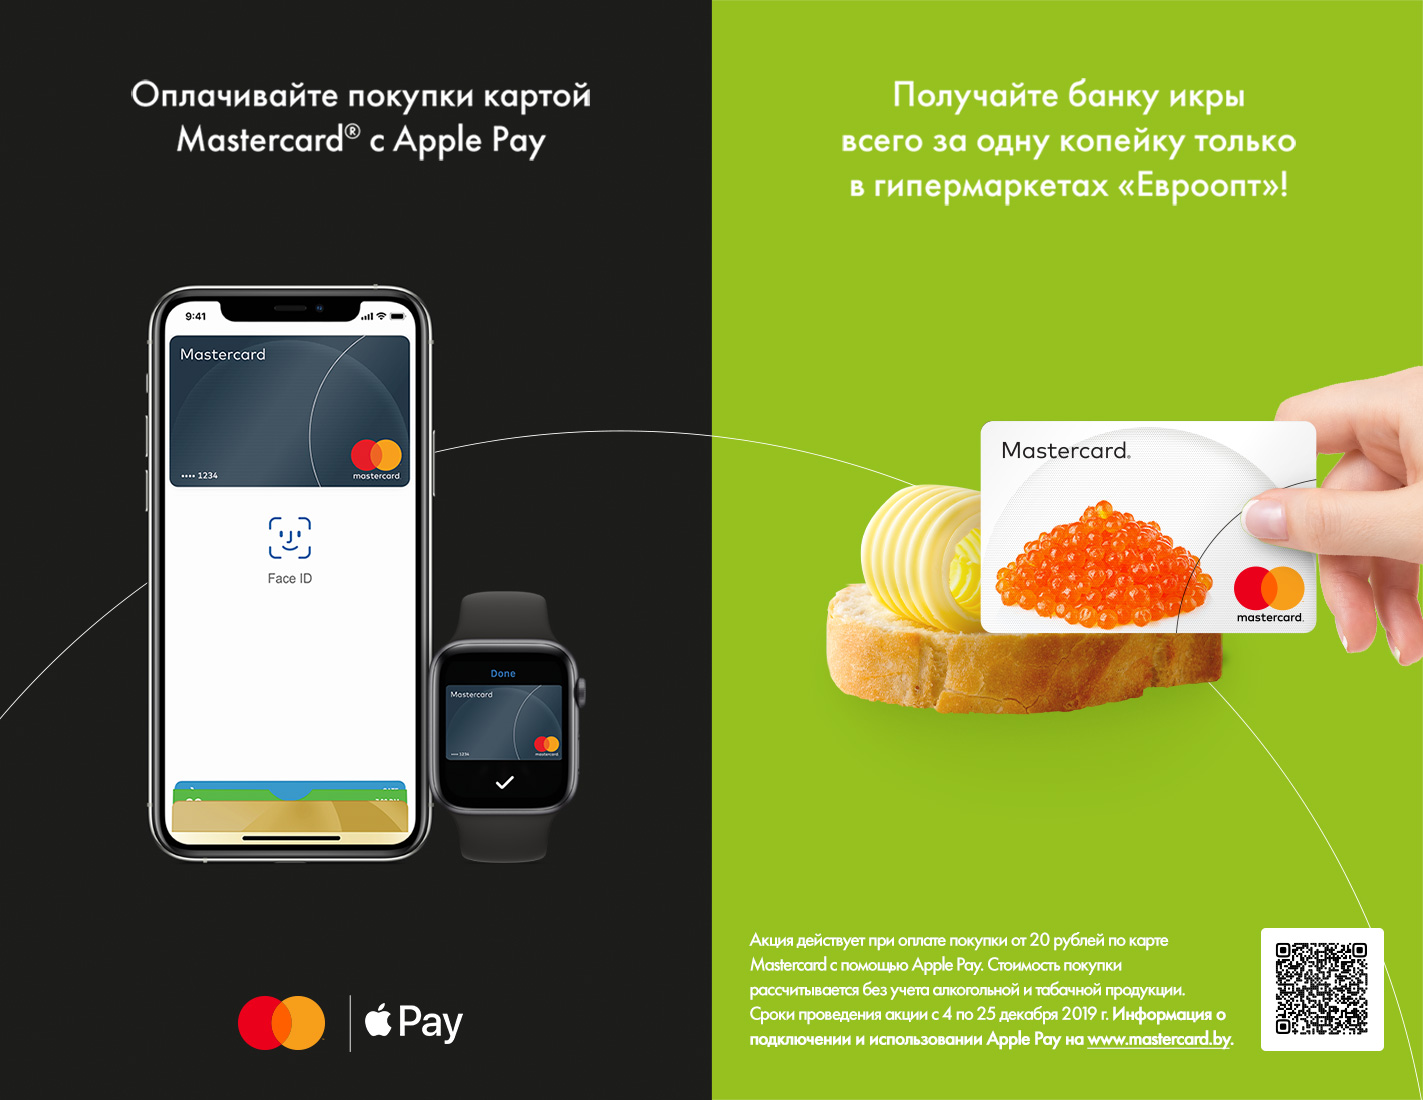 Рекламная кампания, Беларусь, PR3, Mastercard, Apple pay